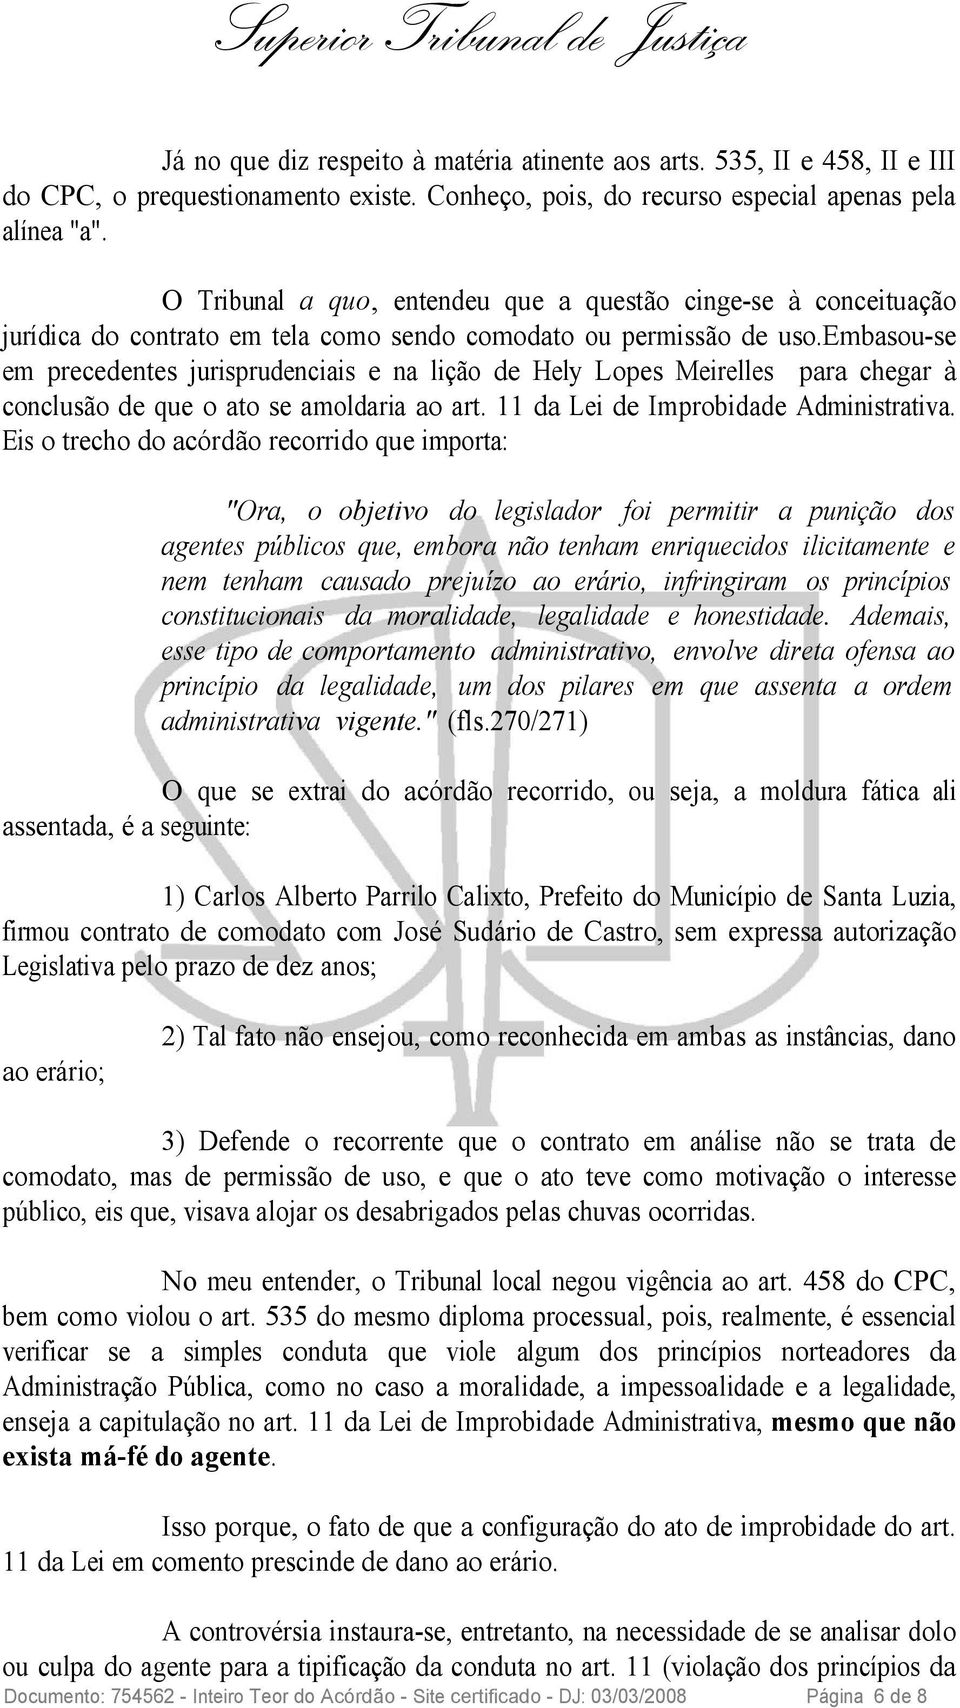 embasou-se em precedentes jurisprudenciais e na lição de Hely Lopes Meirelles para chegar à conclusão de que o ato se amoldaria ao art. 11 da Lei de Improbidade Administrativa.